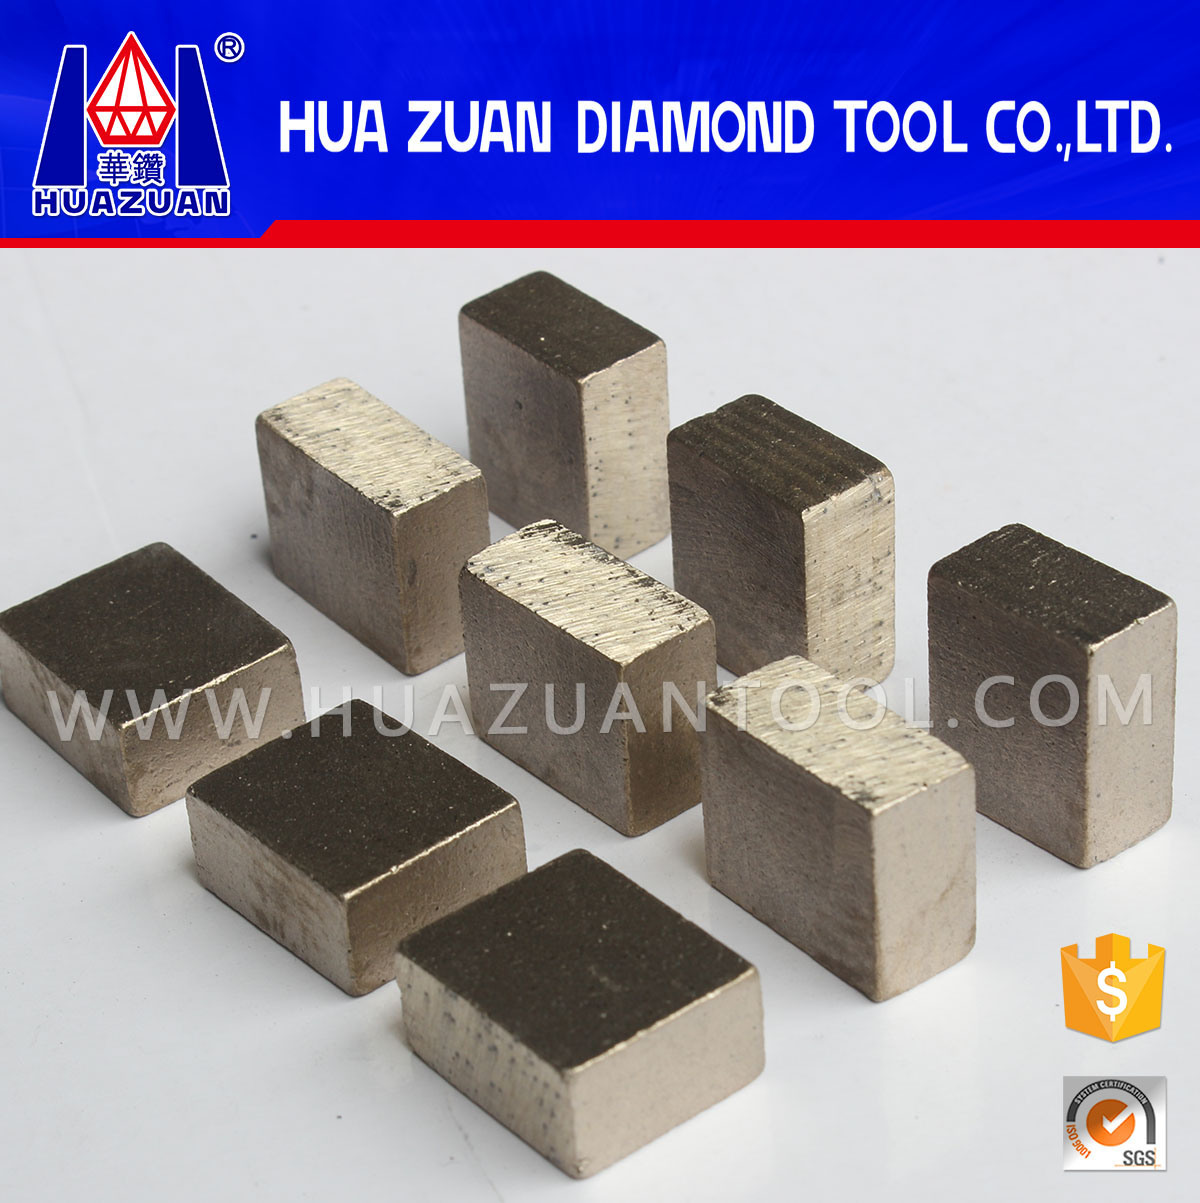 China Diamond Segment Supplier